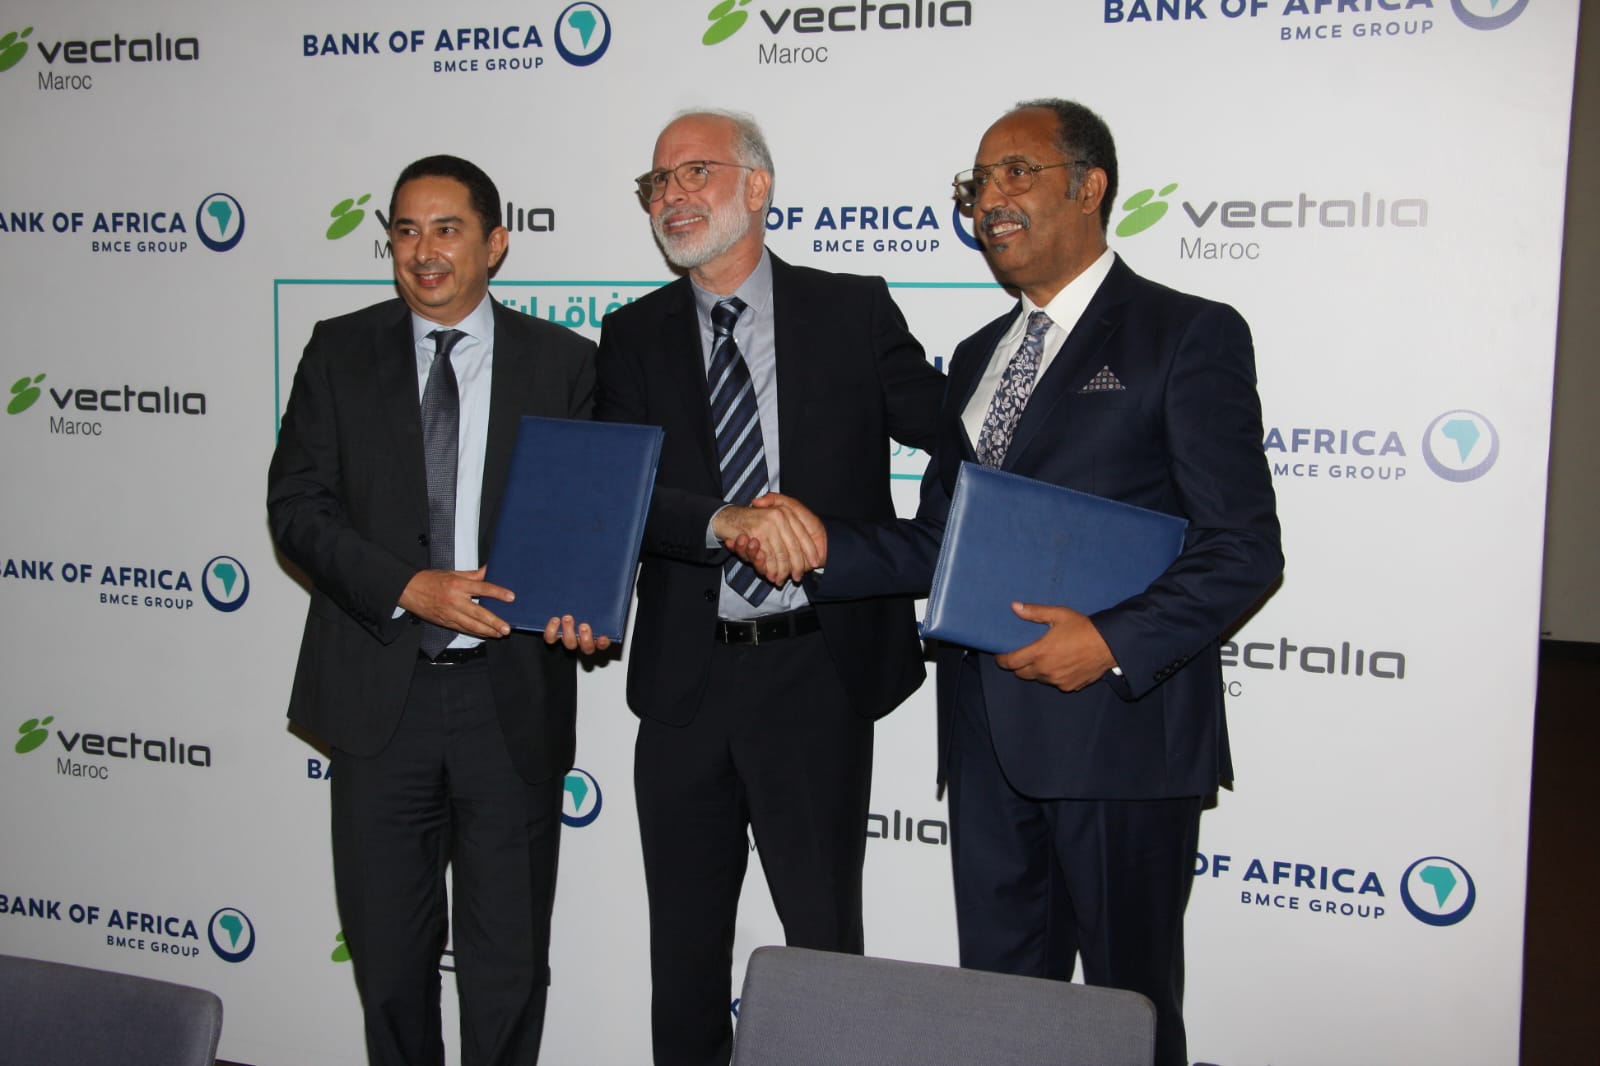 بنك أفريقيا بشراكة مع فيكتاليا VECTALIA يطلق حل الأداء عبر الهاتف “دابا باي برو” PRO DABAPAY داخل حافلات الناظور وآسفي